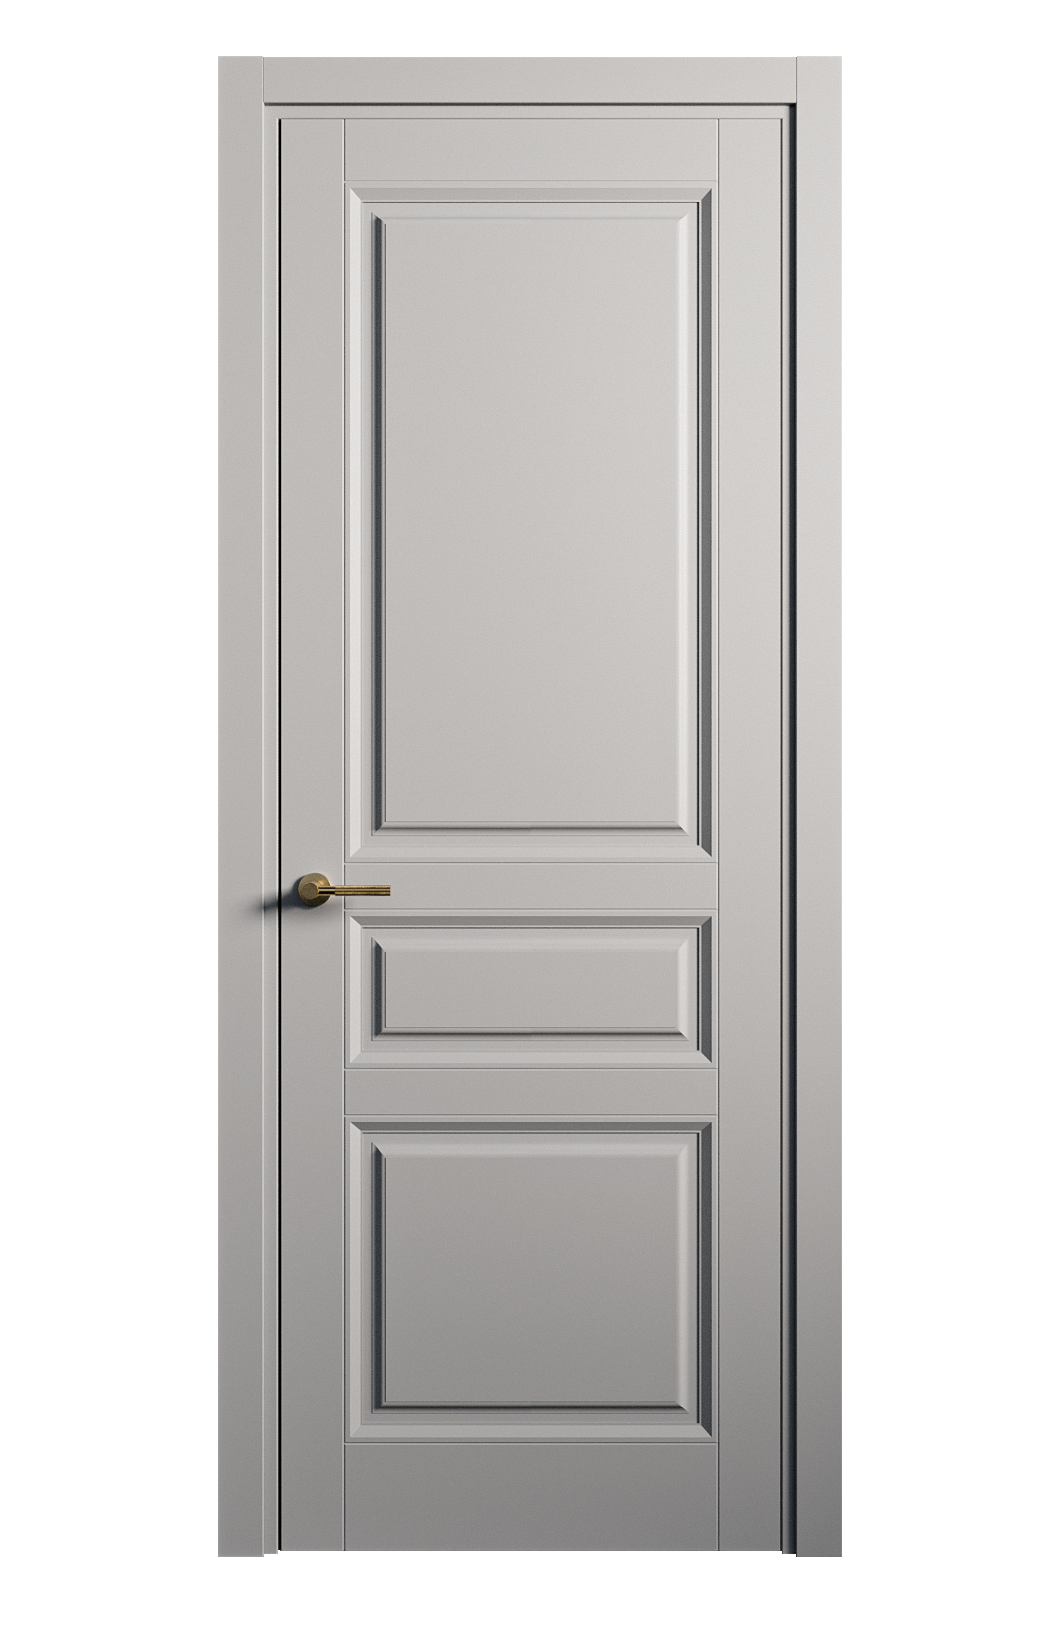 Межкомнатная дверь Venezia-2 глухая эмаль ral 7040 25791